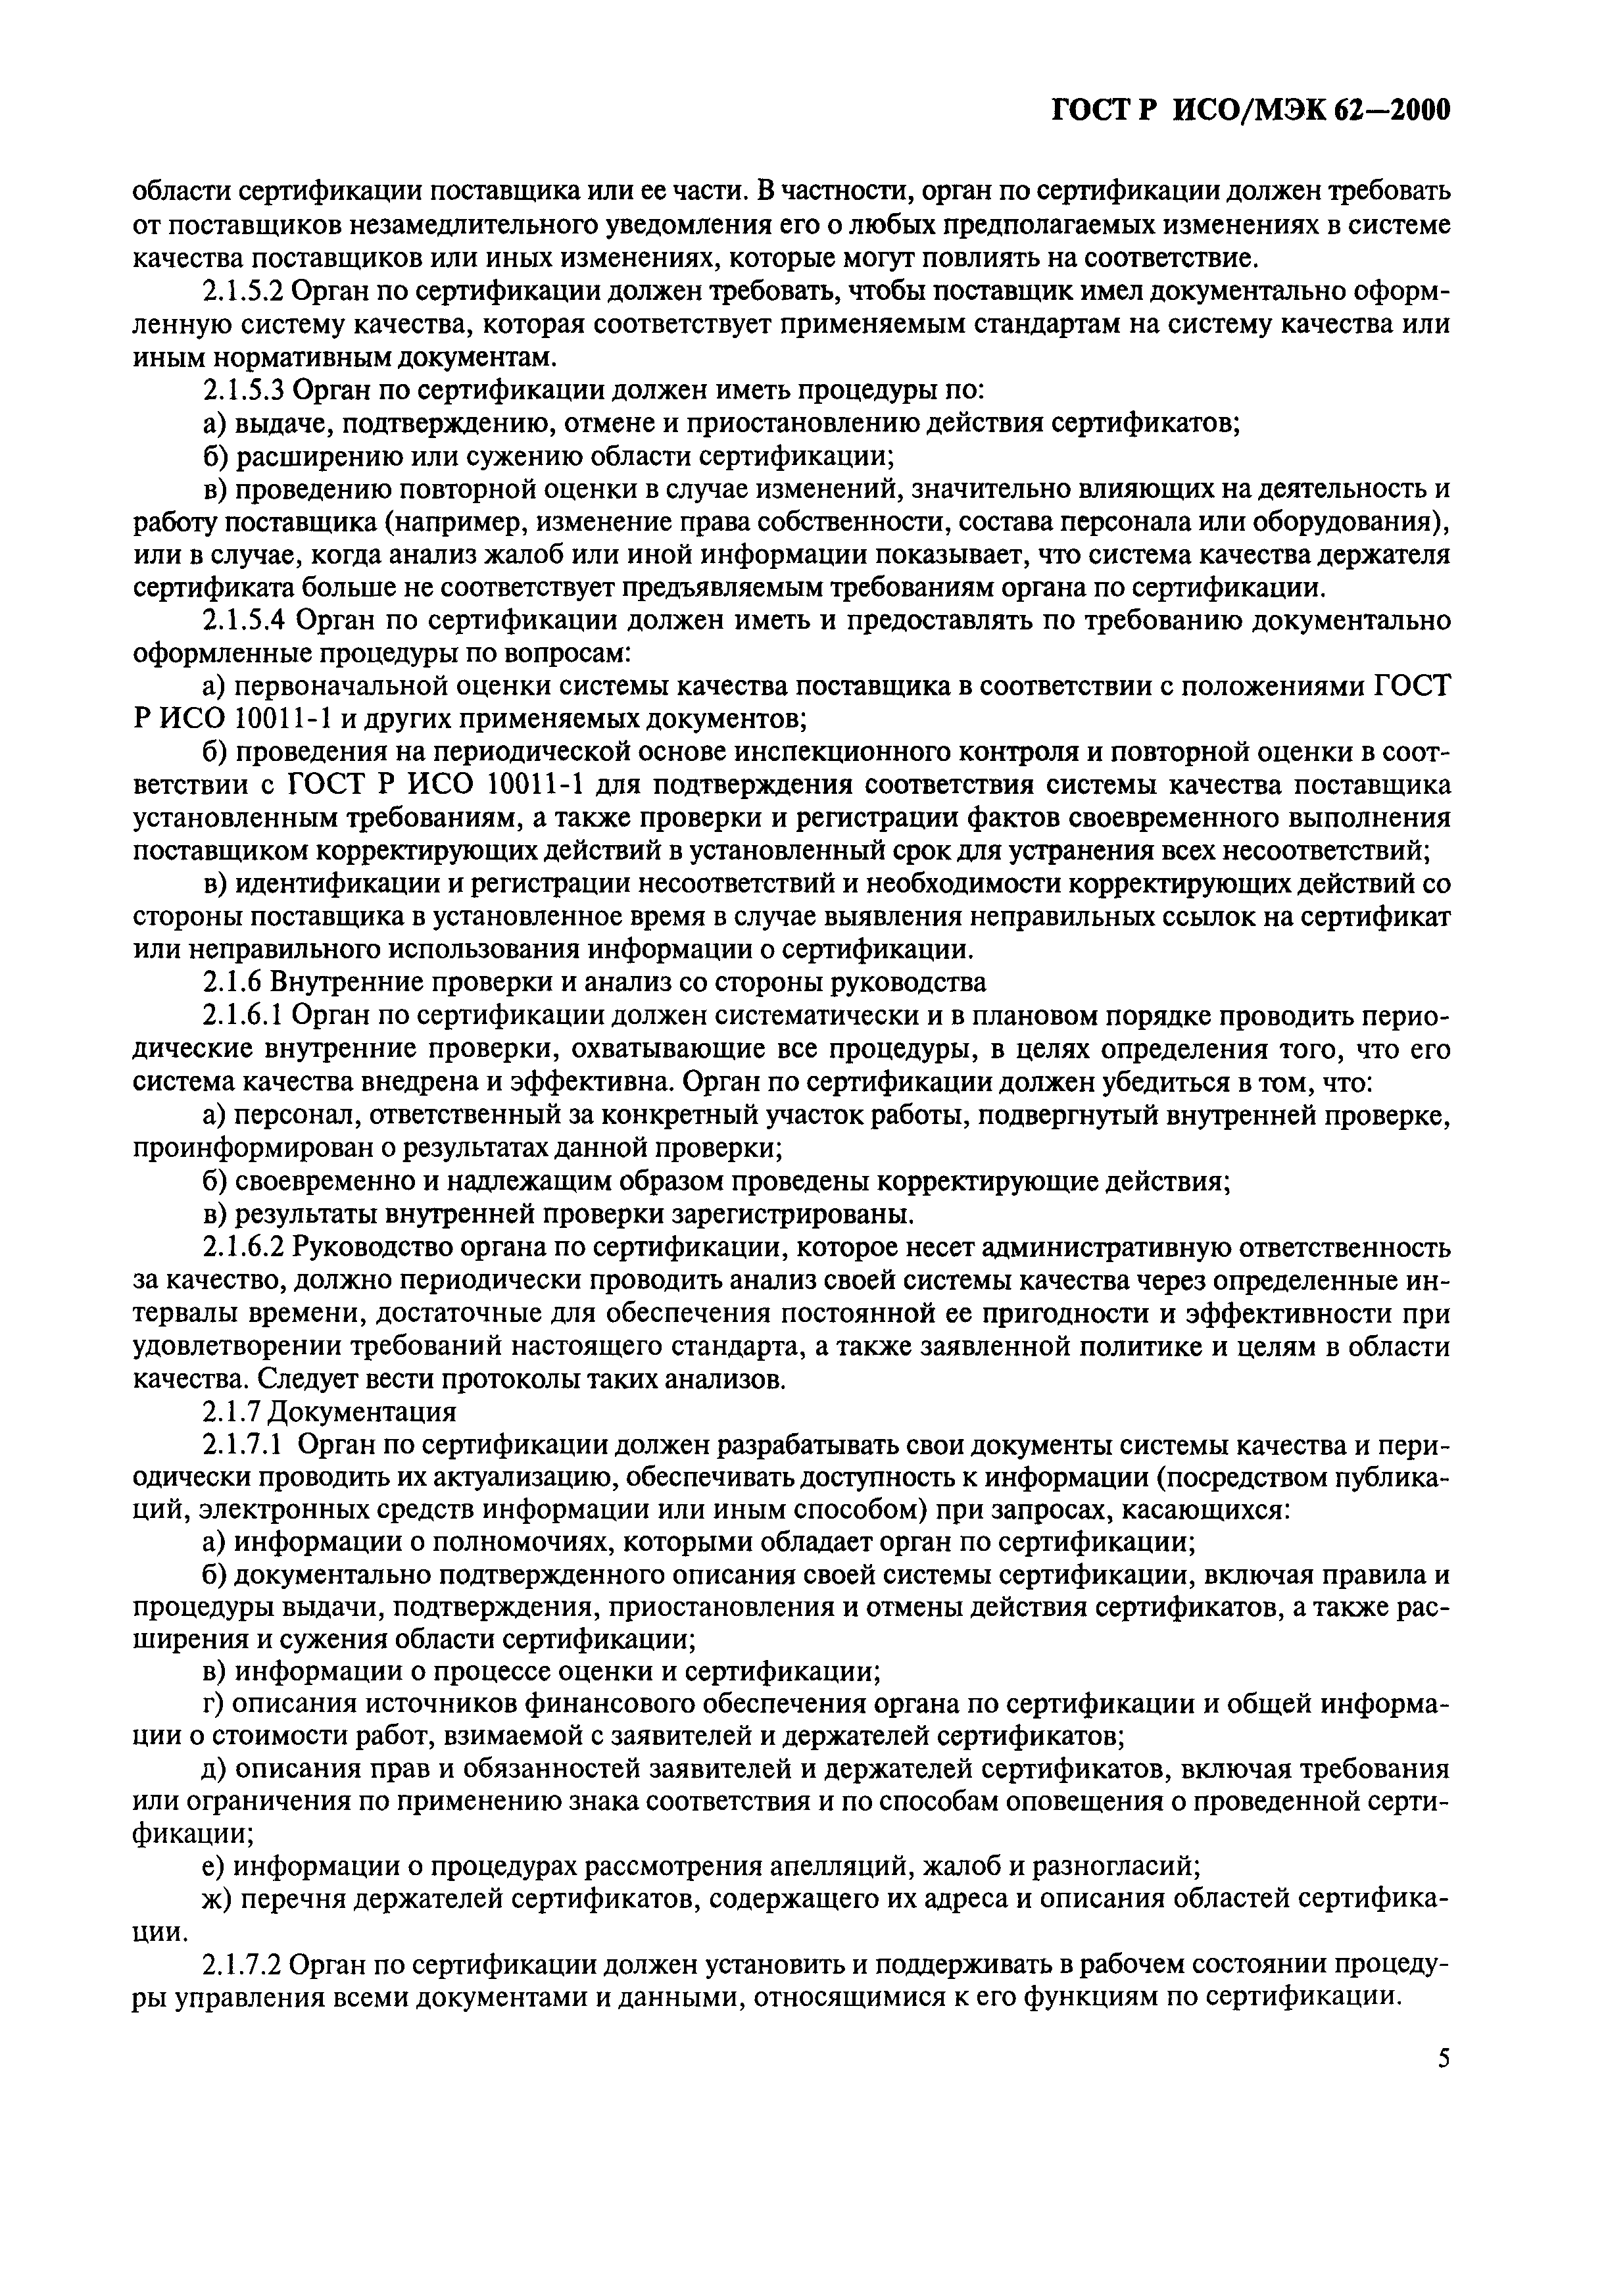 ГОСТ Р ИСО/МЭК 62-2000